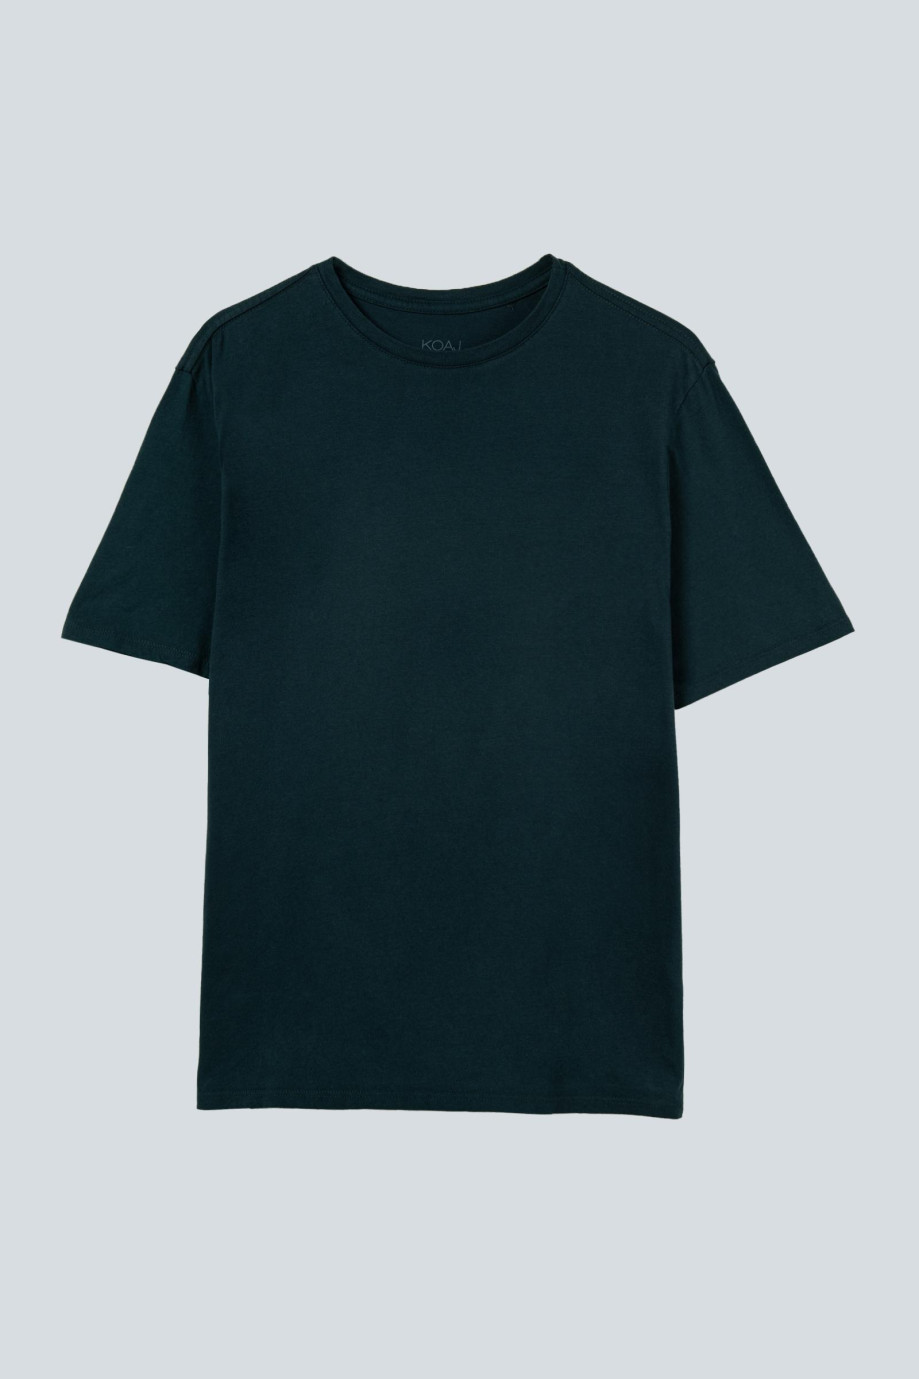 Camiseta cuello redondo verde oscura en algodón con manga corta